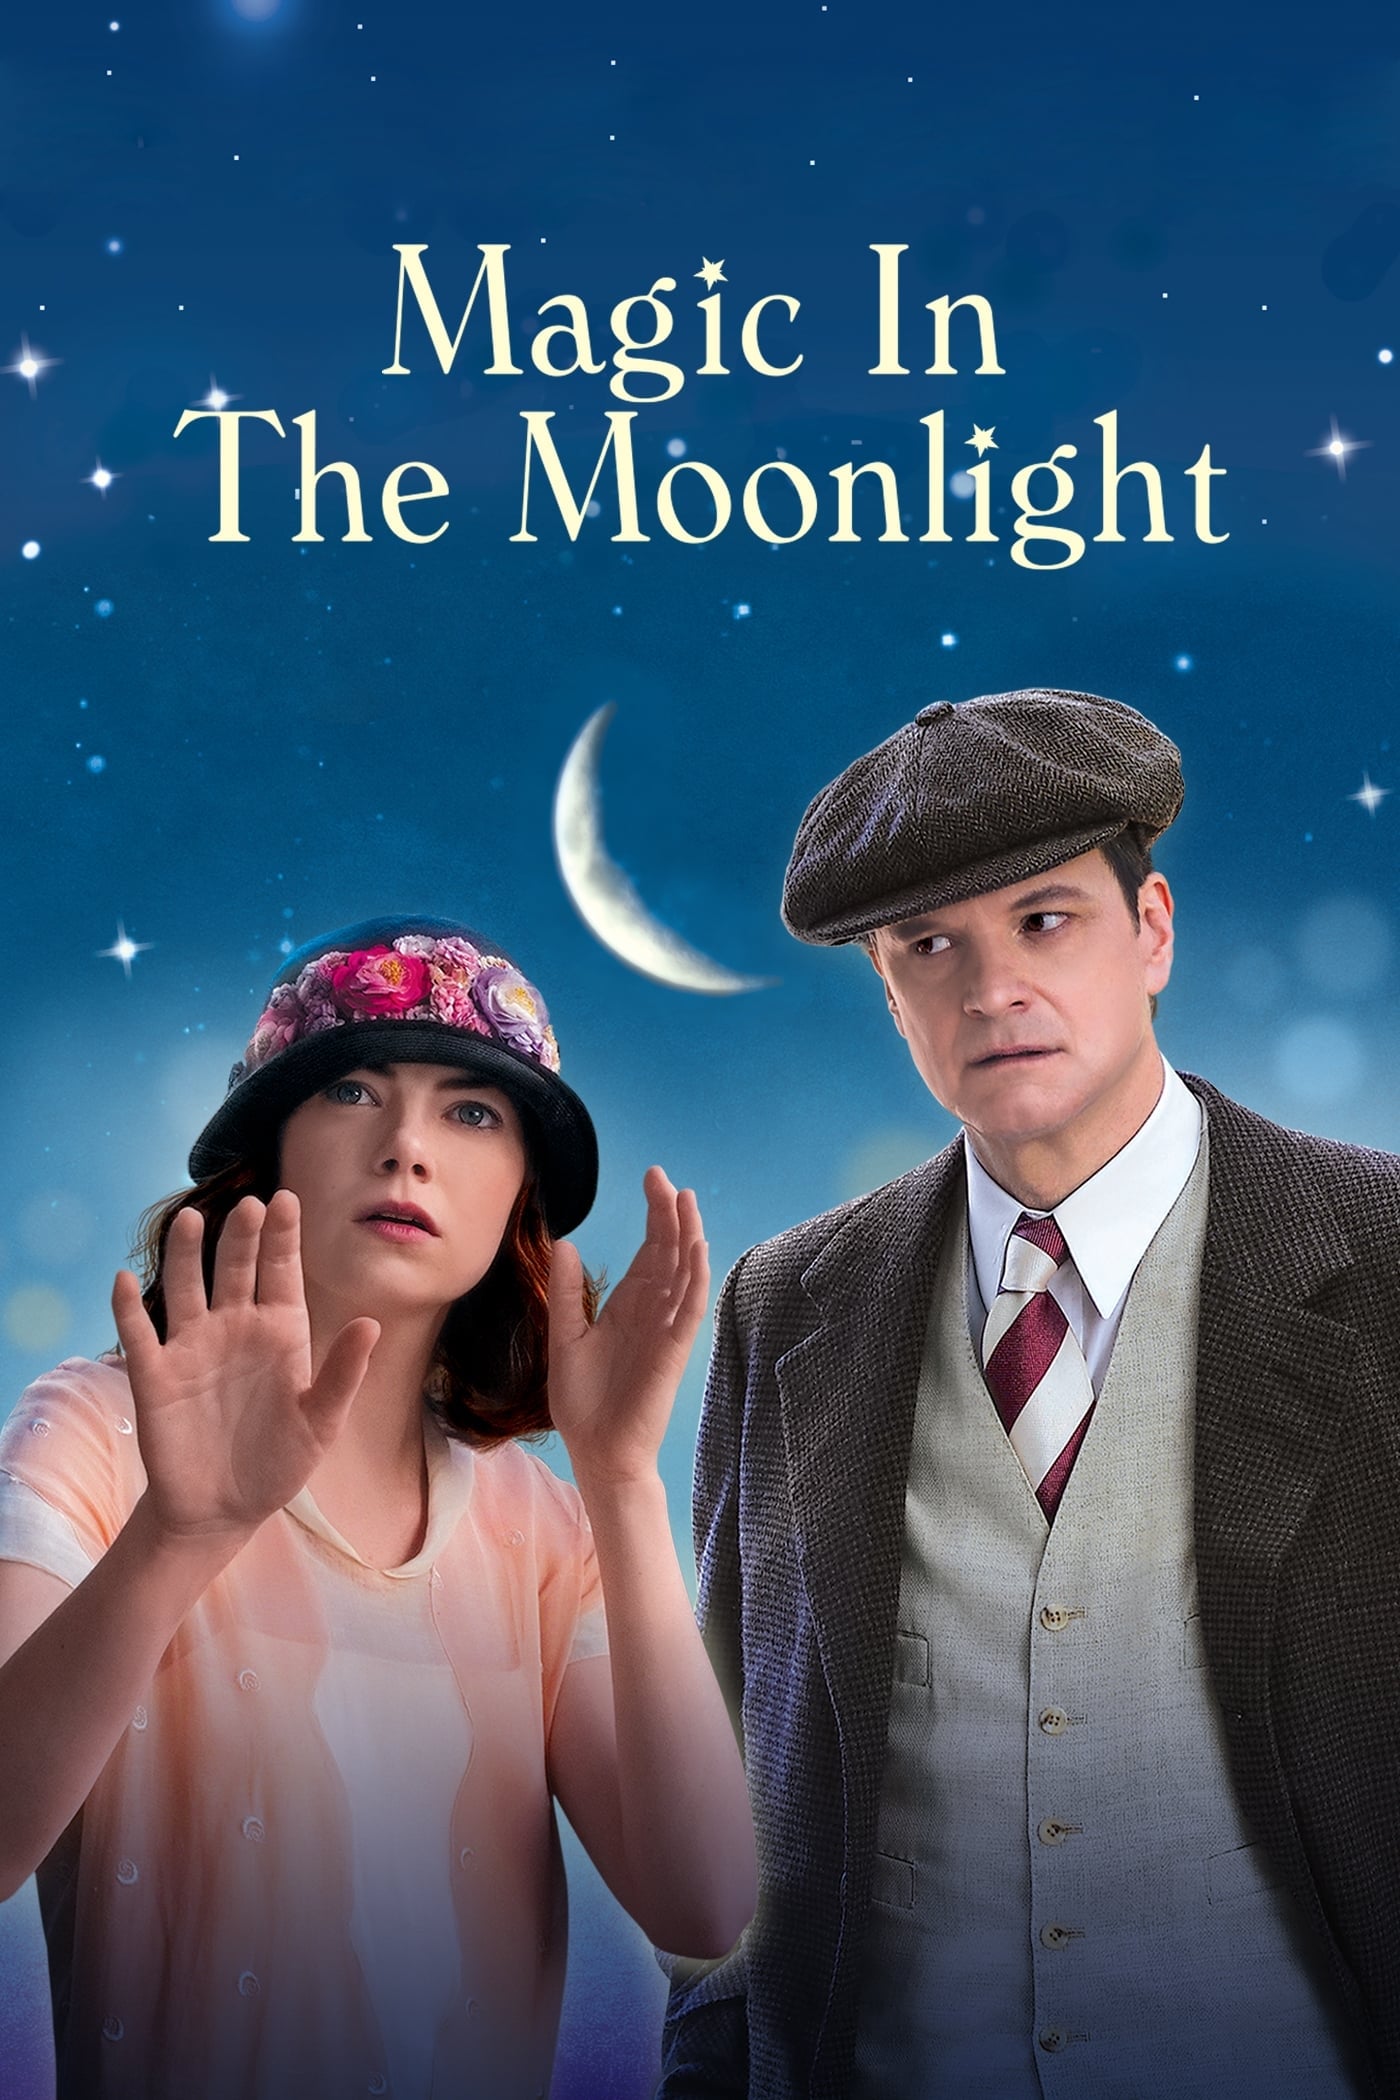 Plakat von "Magic in the Moonlight"